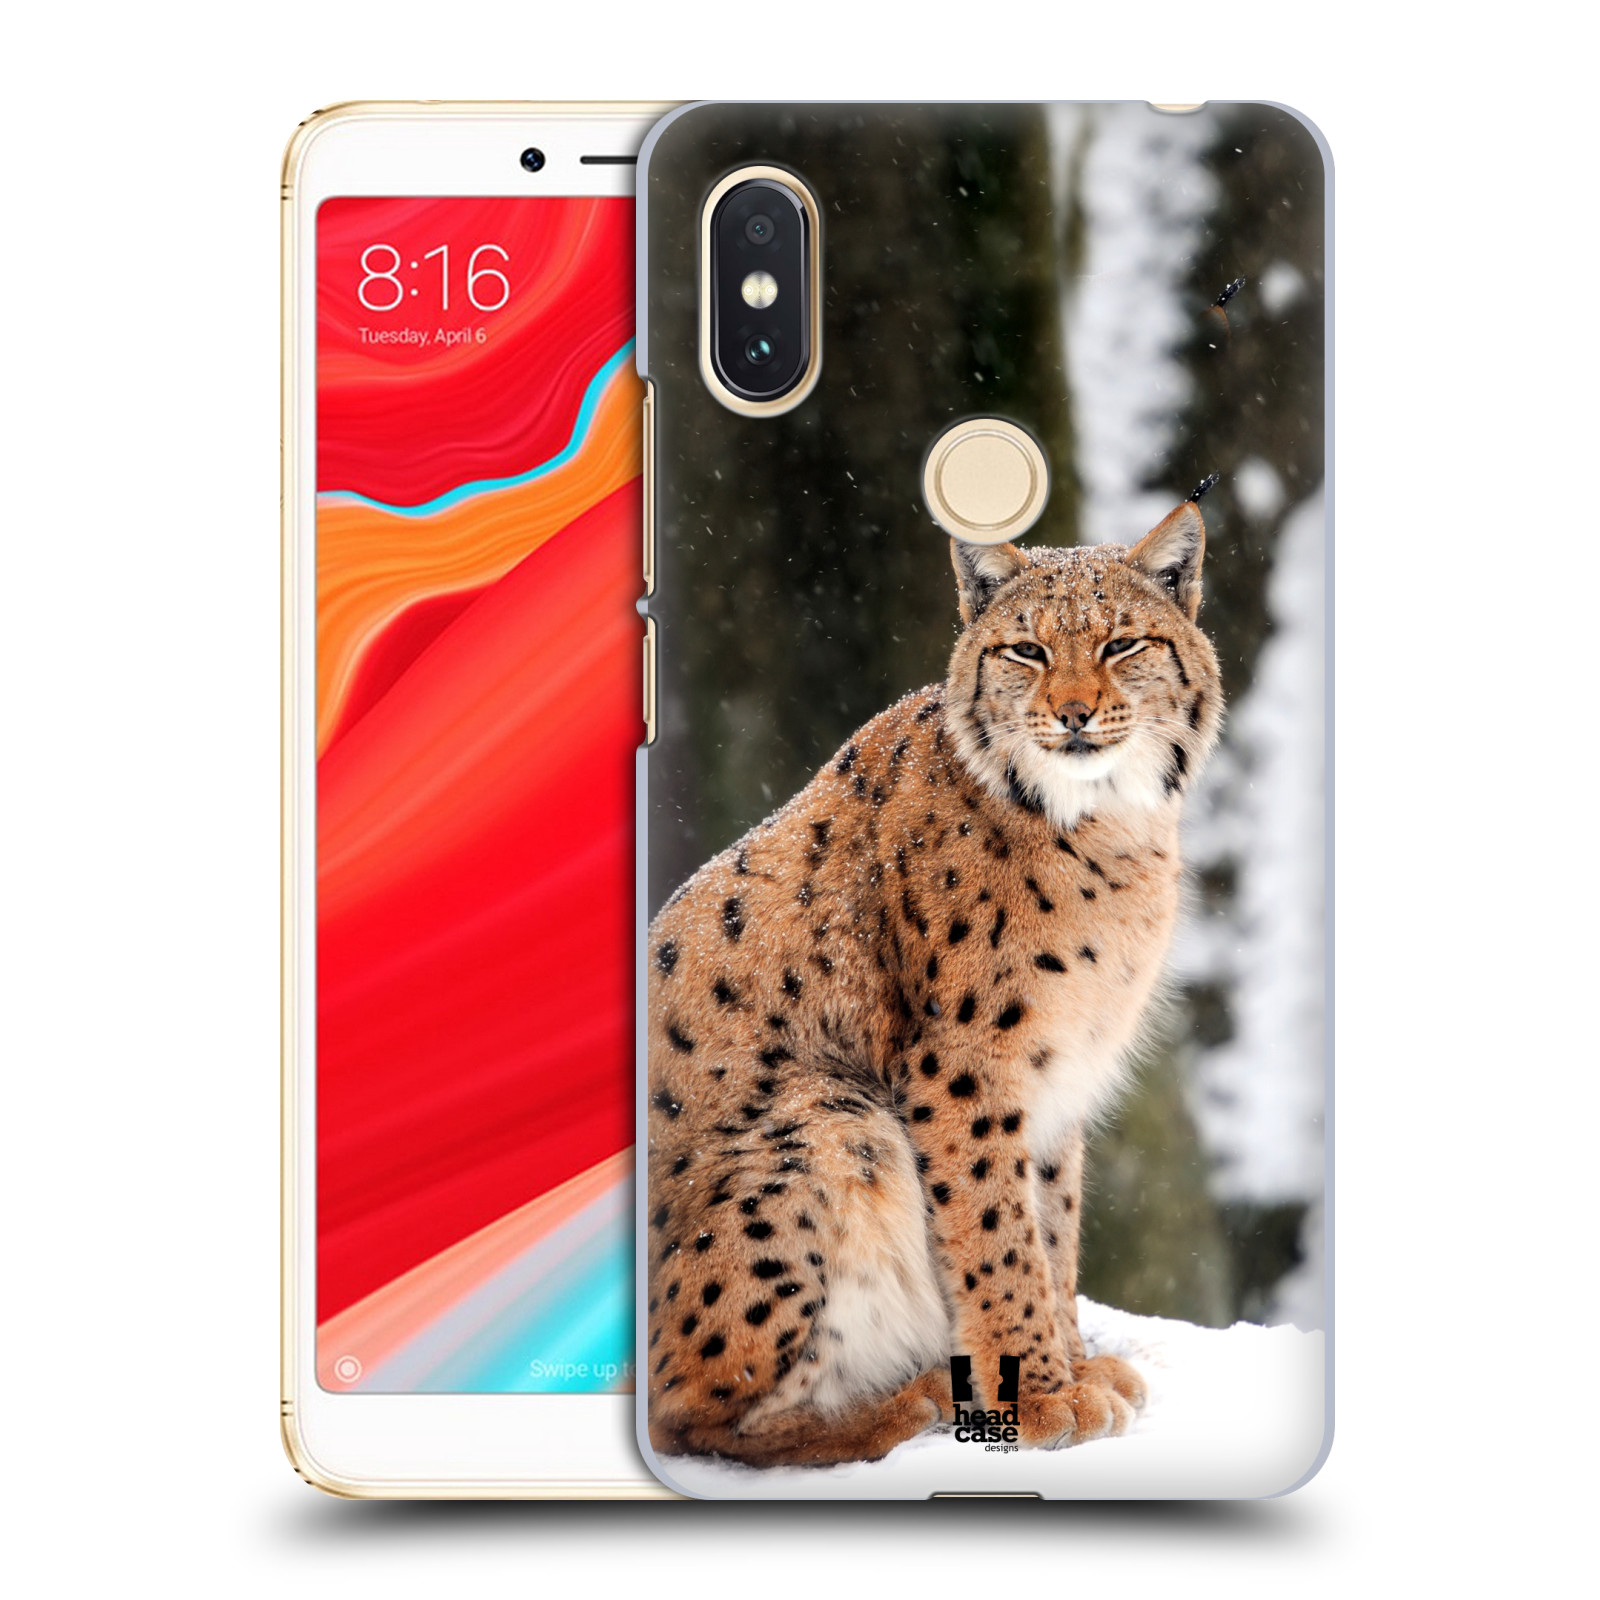 HEAD CASE plastový obal na mobil Xiaomi Redmi S2 vzor slavná zvířata foto rys